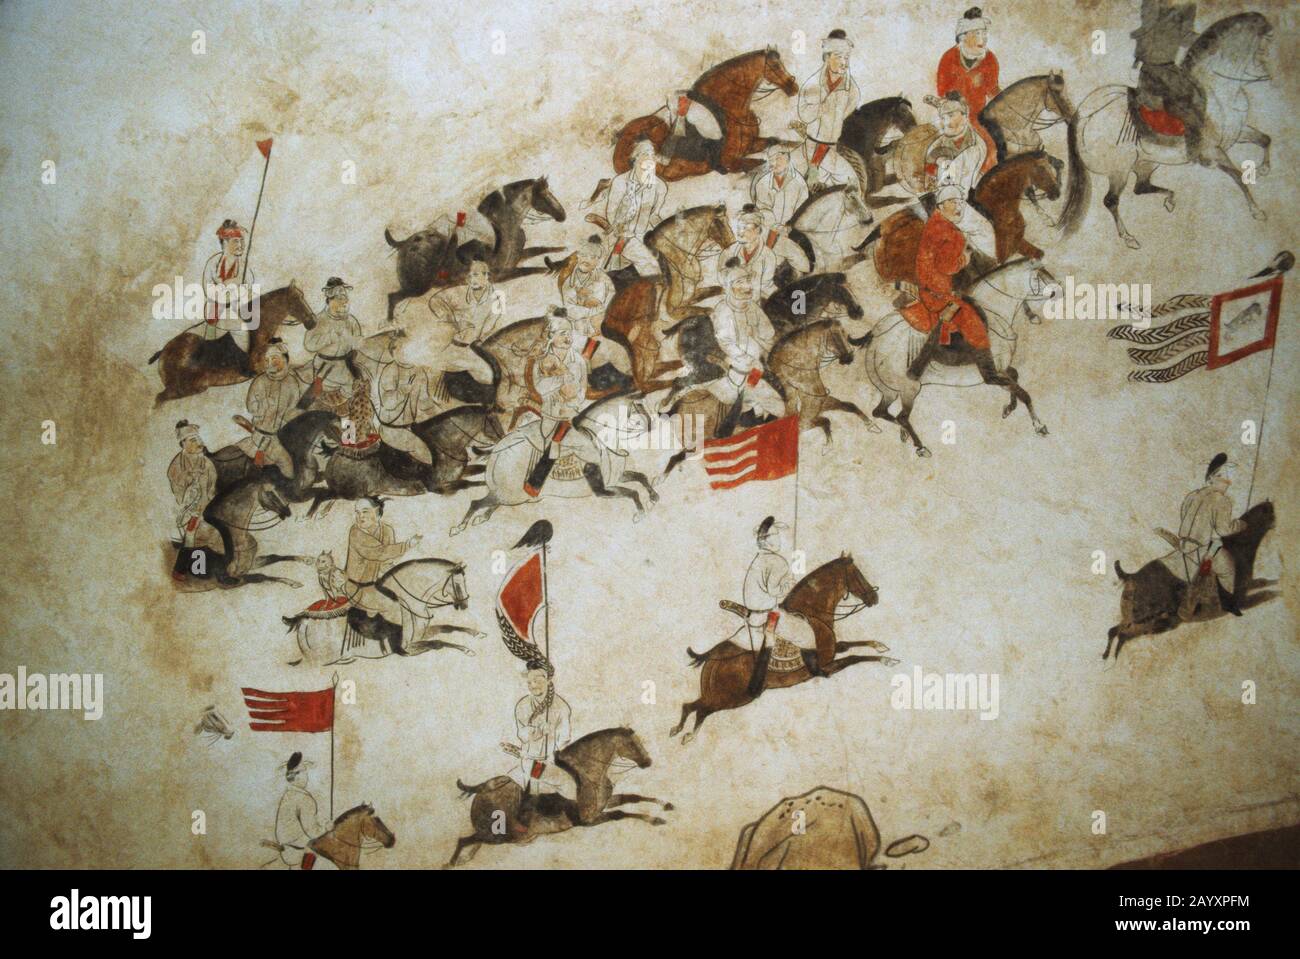 Des peintures murales qui pirent des soldats à cheval sur le mur du mausolée de Qianling, un site tombeau de la dynastie Tang (618–907) situé dans le comté de Qian, Shaanxi Proligi Banque D'Images